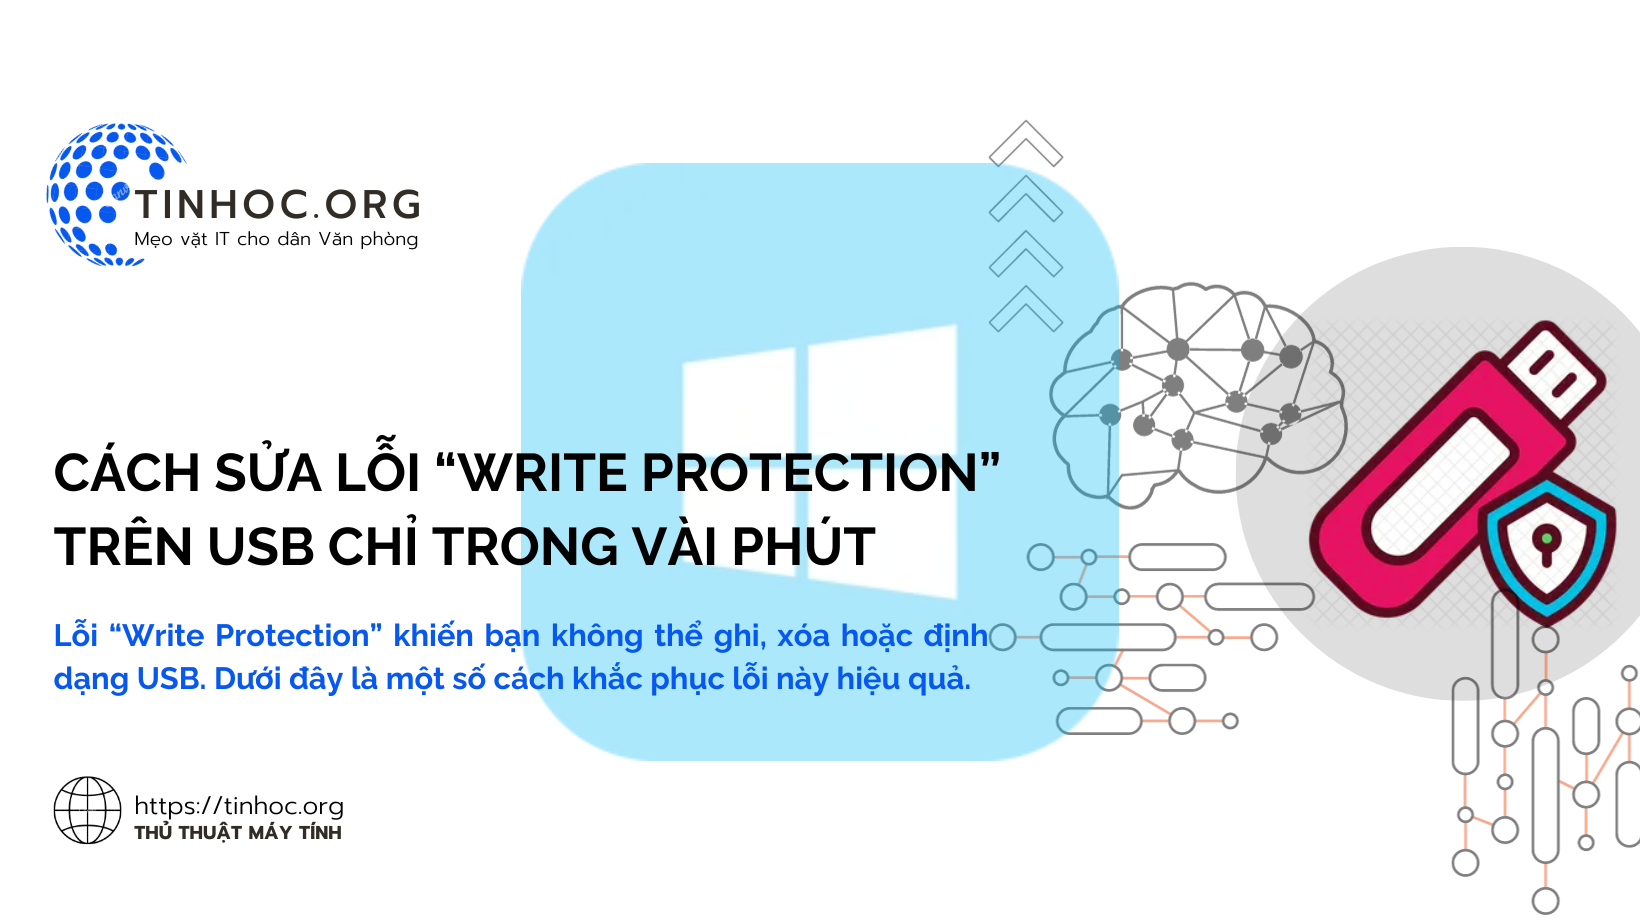 Lỗi “Write Protection” khiến bạn không thể ghi, xóa hoặc định dạng USB. Dưới đây là một số cách khắc phục lỗi này hiệu quả.